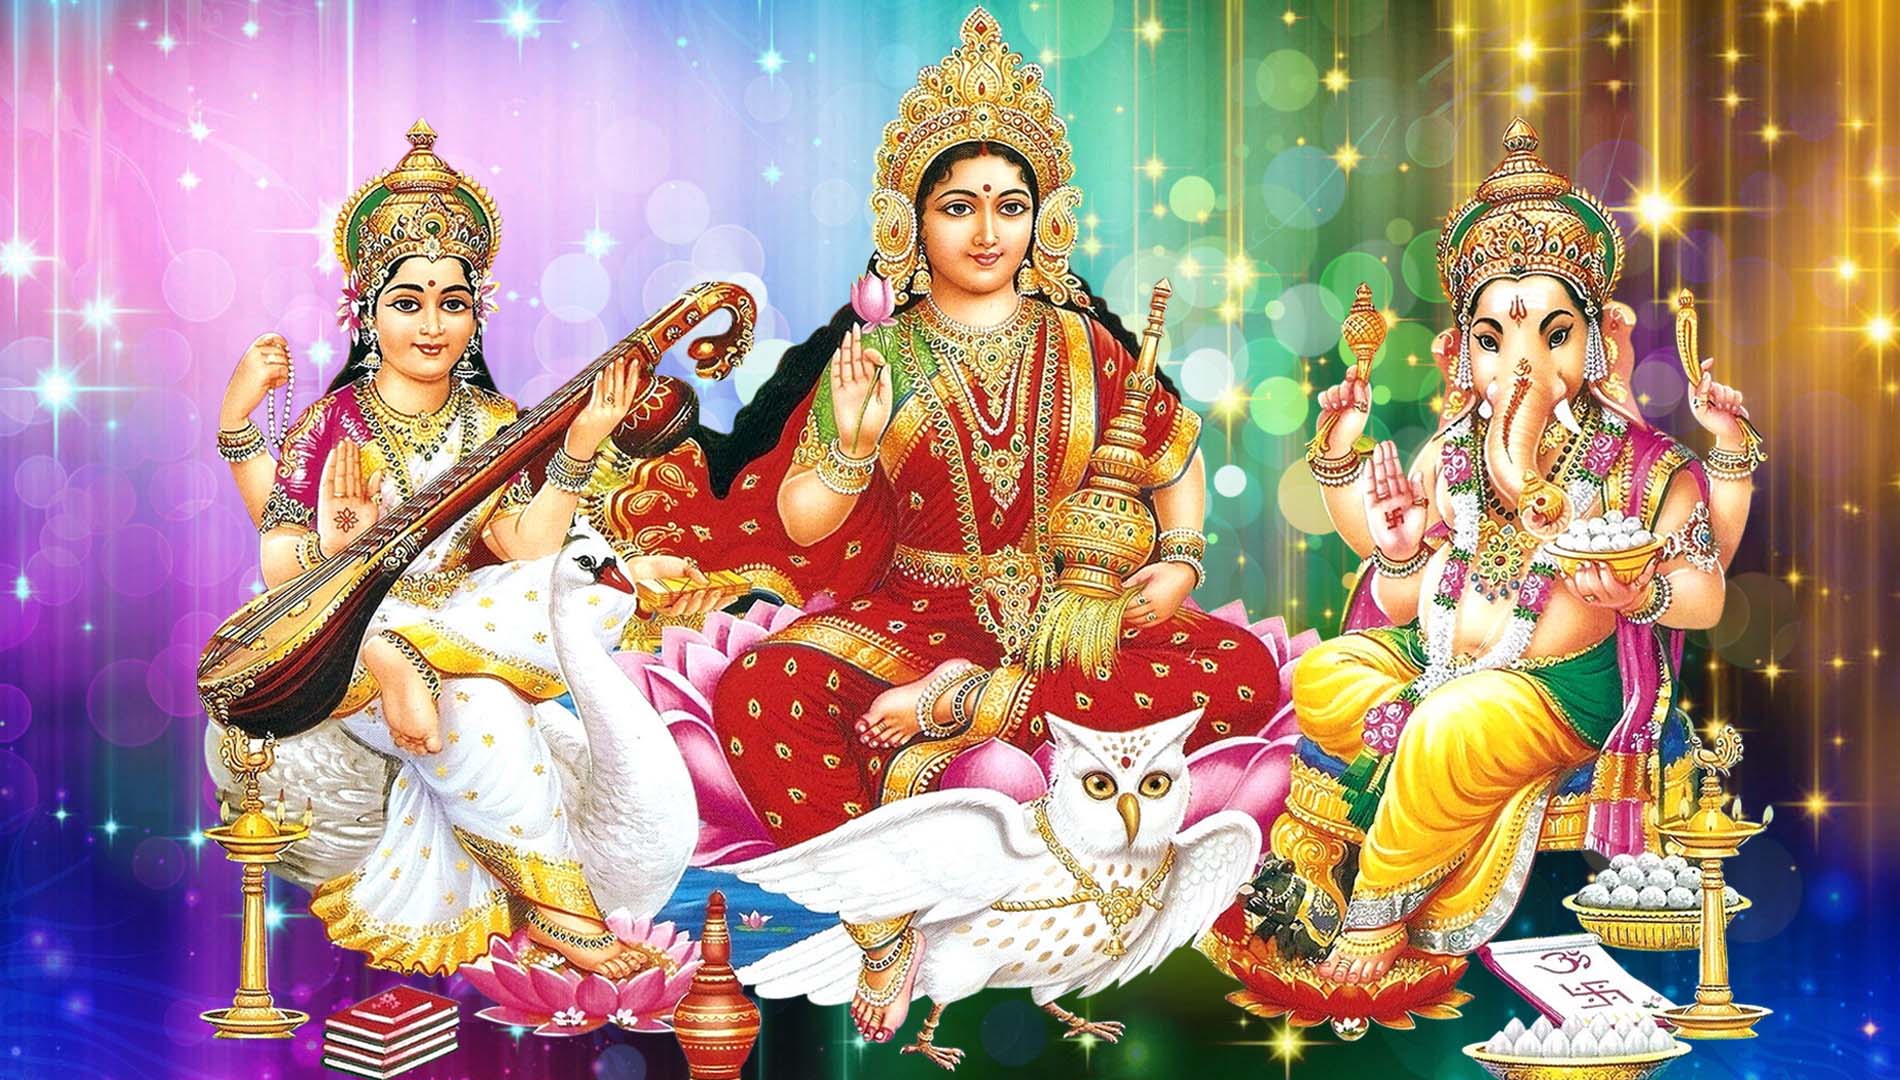 Lakshmi Ganesh Saraswati Desktop Wallpapers Hd